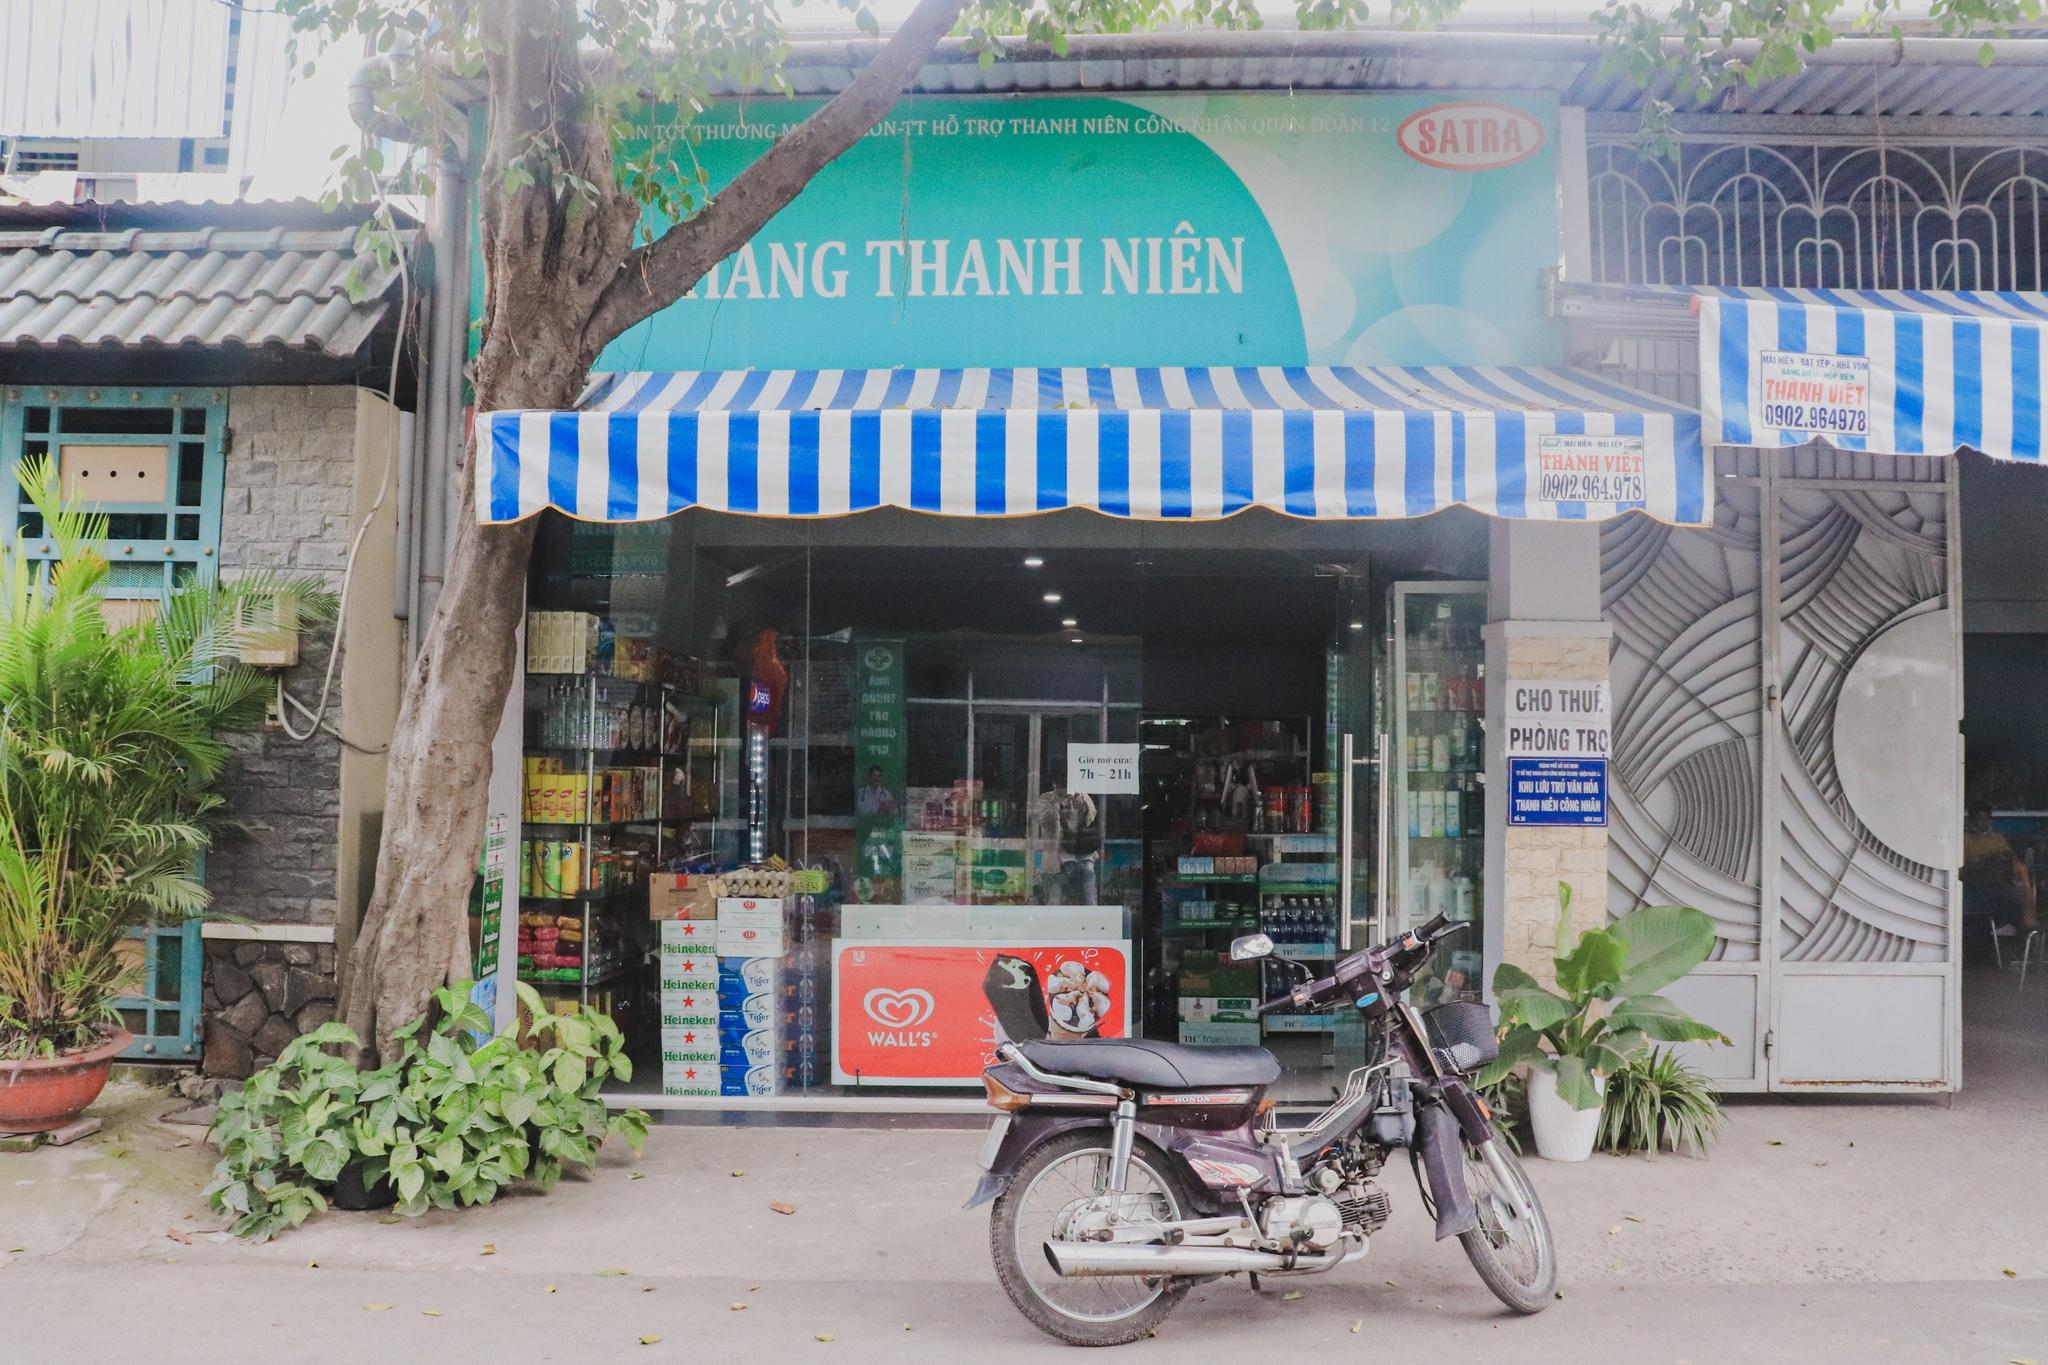 Nhà trọ 'độc, lạ' ở TP.HCM: Ông chủ quê Bình Định với độ chơi sộp miễn chê - ảnh 7